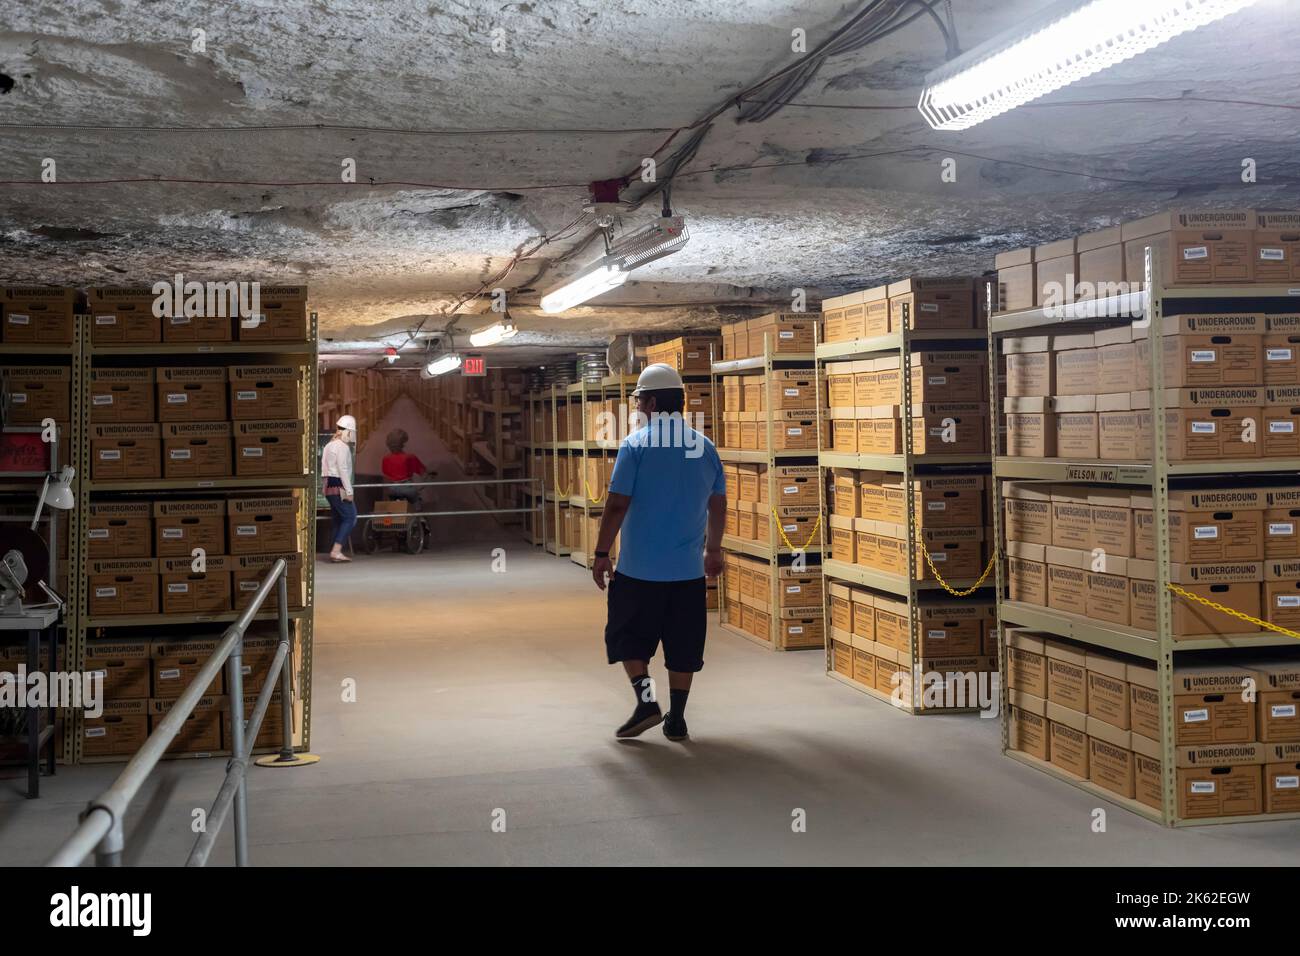 Hutchinson, Kansas - Une exposition de ce à quoi ressemble le stockage souterrain de documents au Musée de la mine souterraine de sel de Strataca. Coffres-forts souterrains et stockage Banque D'Images